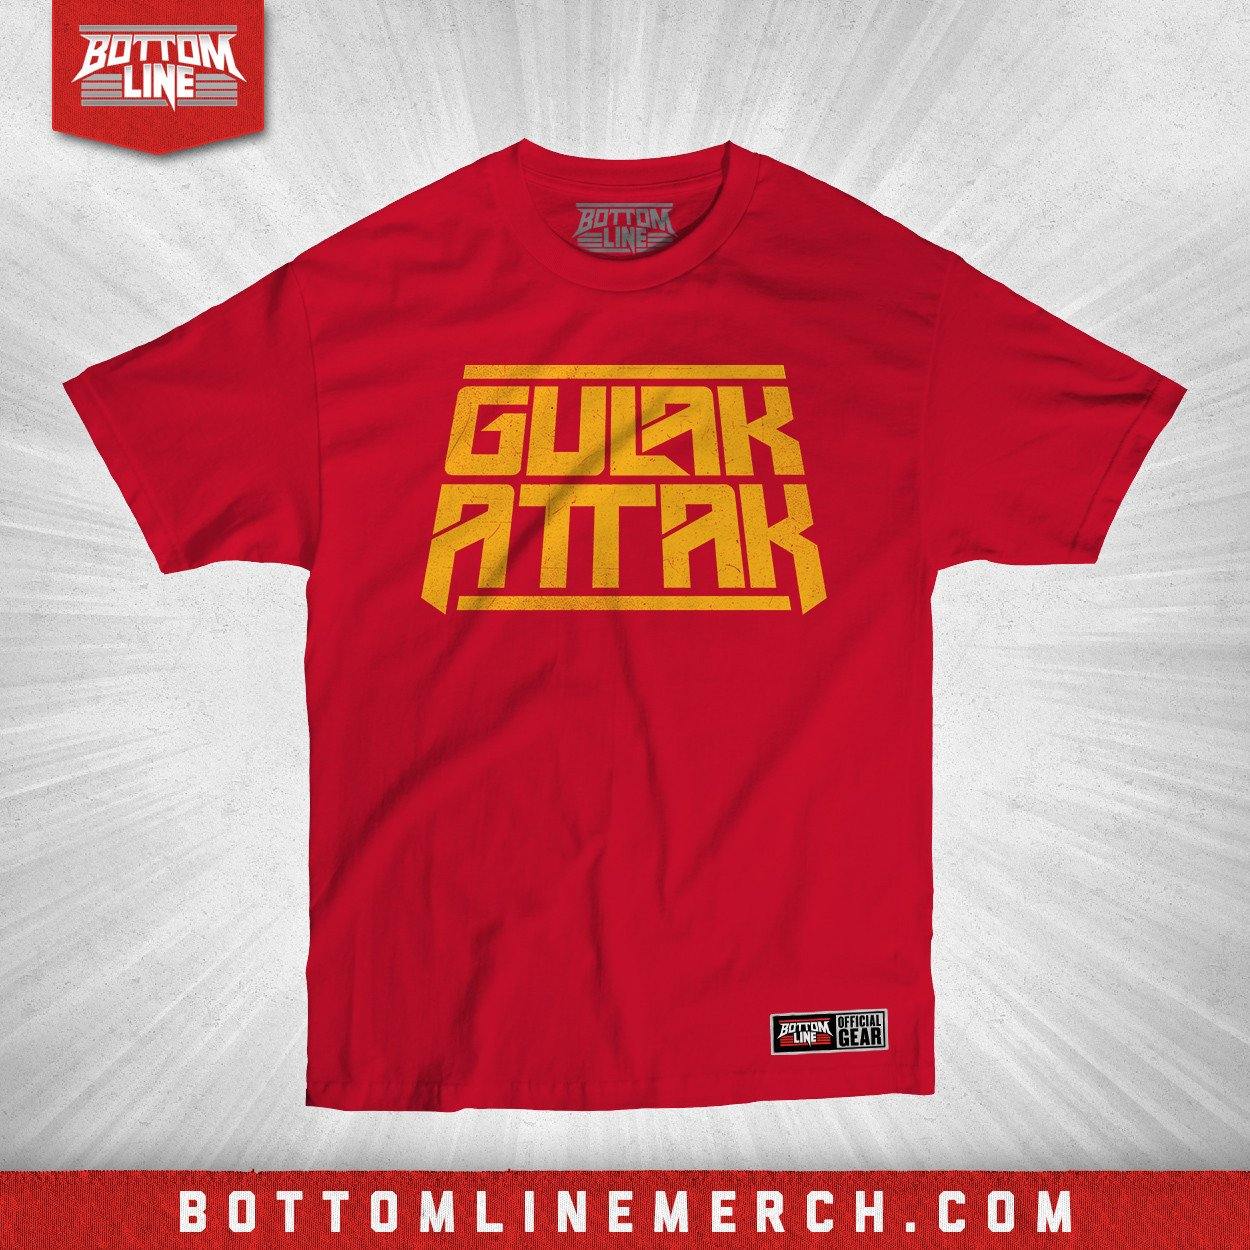 Buy Now – Drew Gulak "Attak Stack" Shirt – Wrestler & Wrestling Merch – Bottom Line